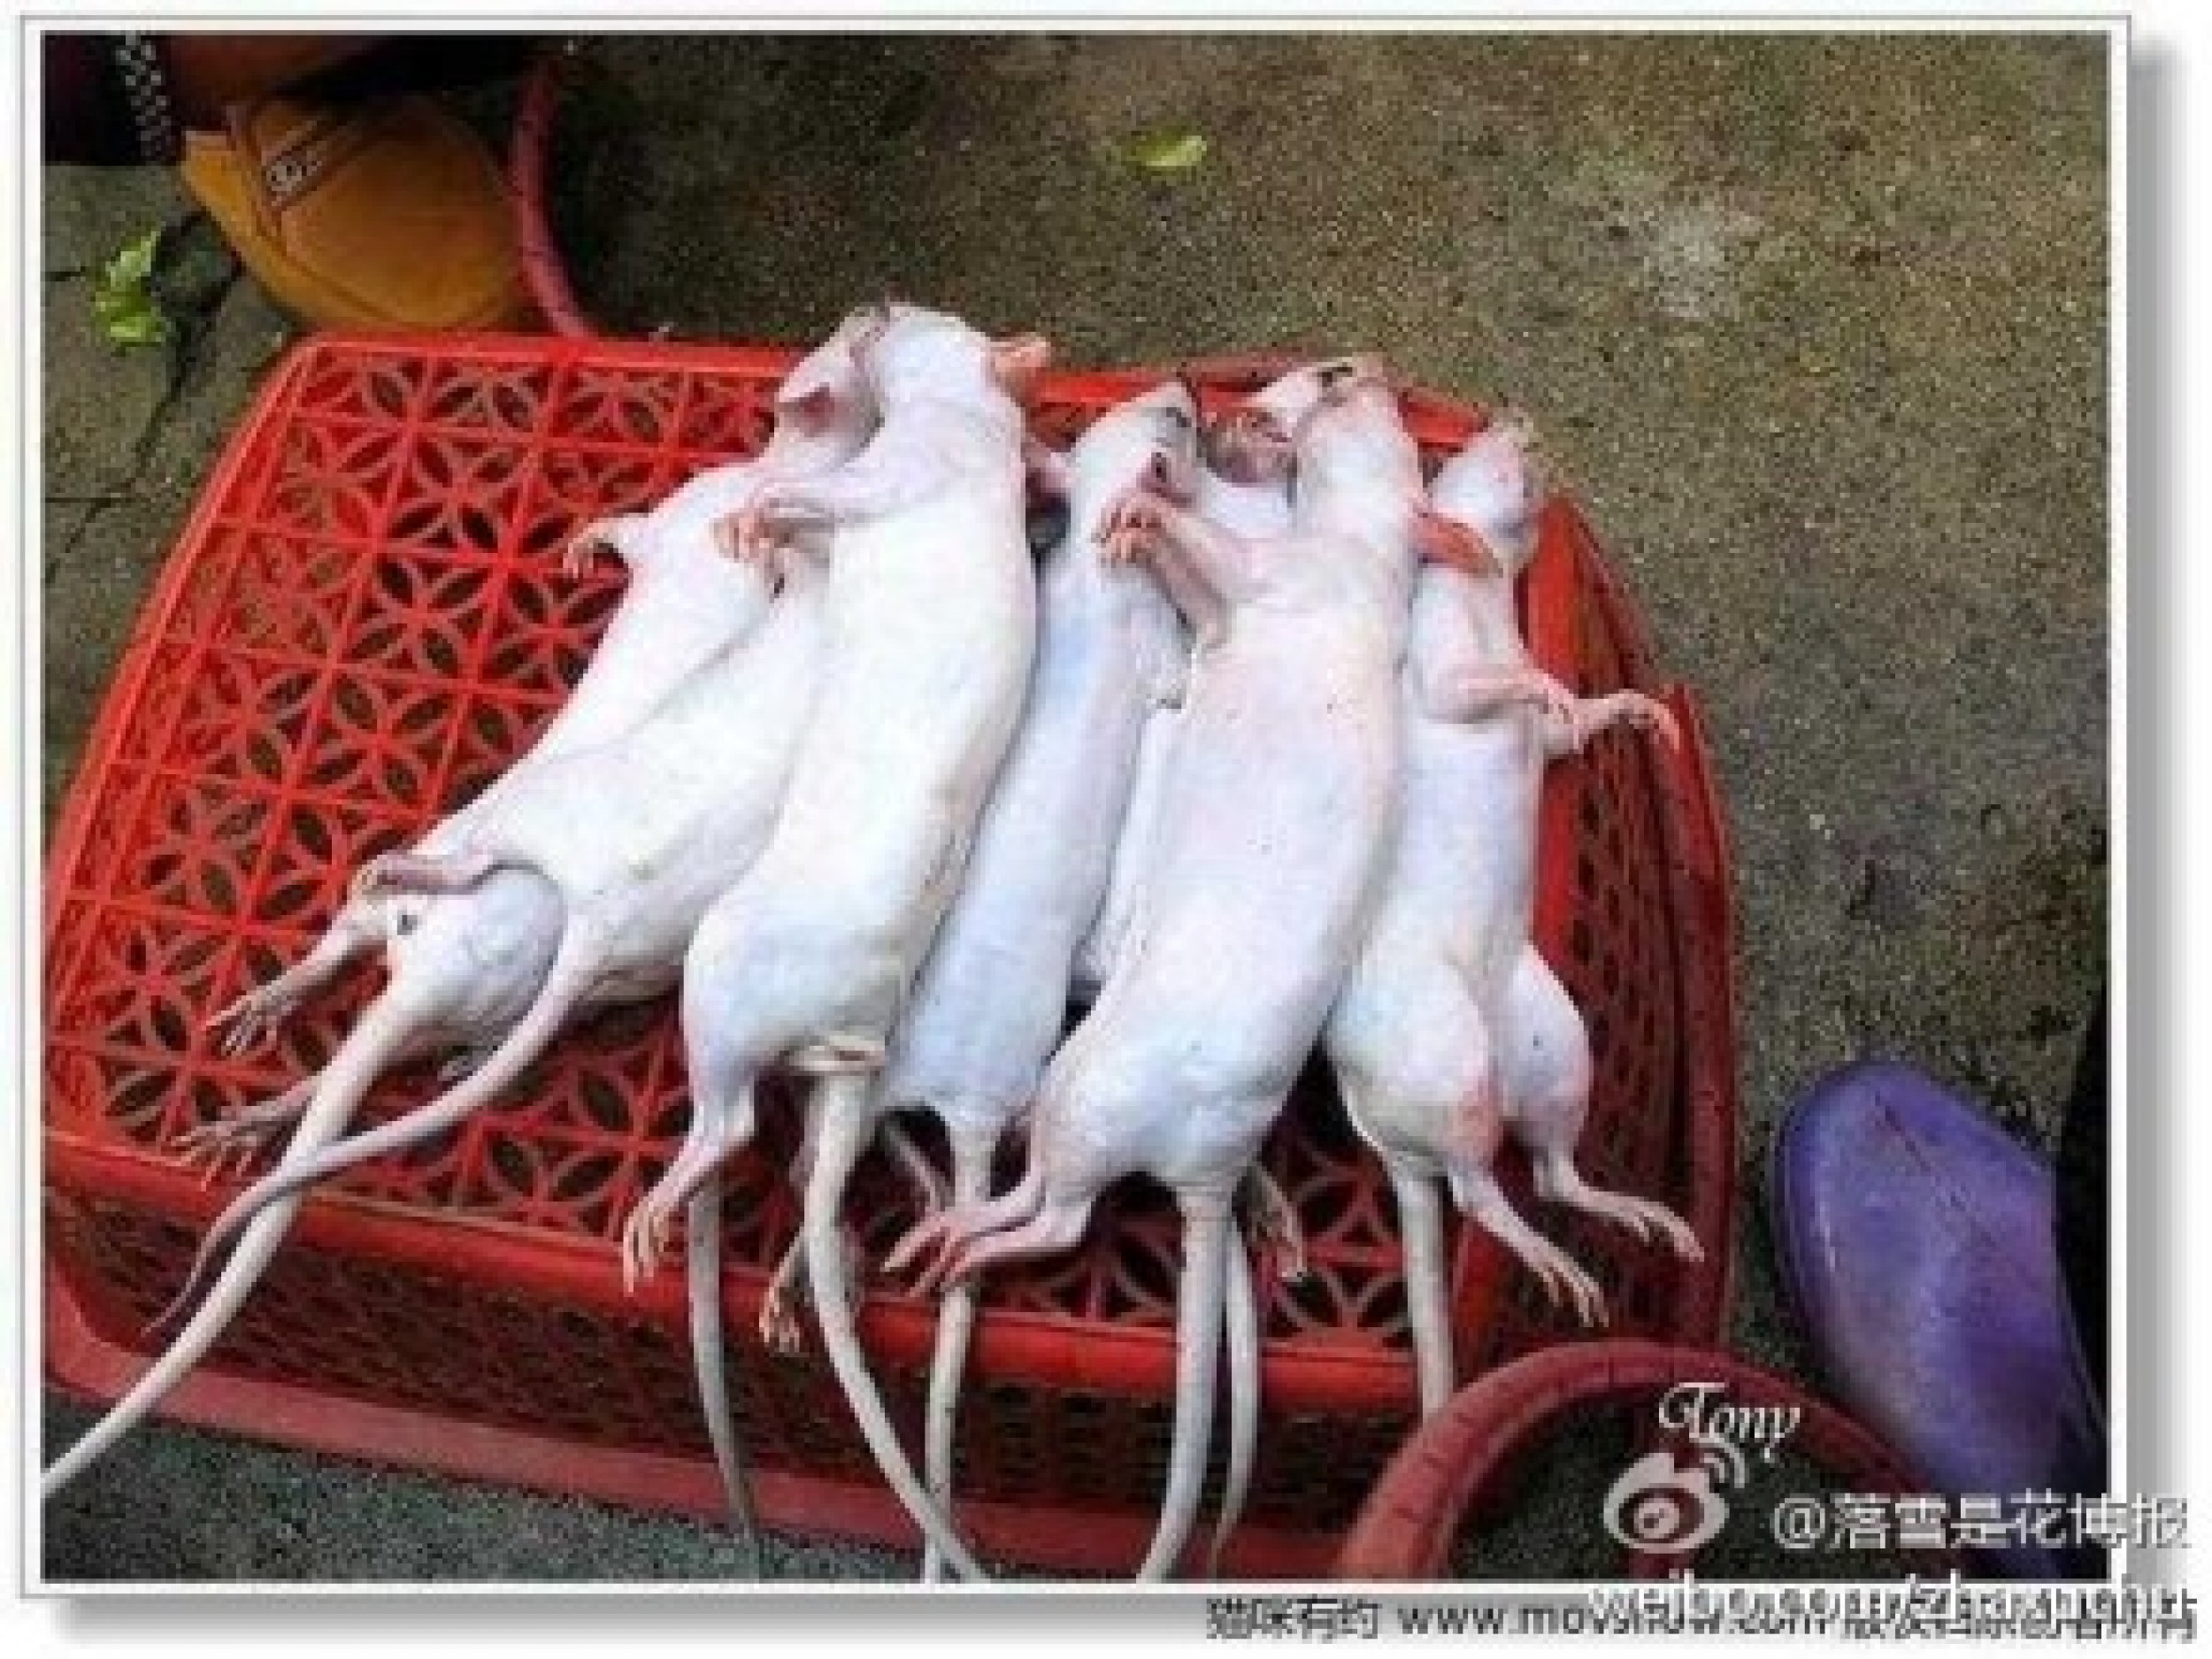 вьетнам крысы